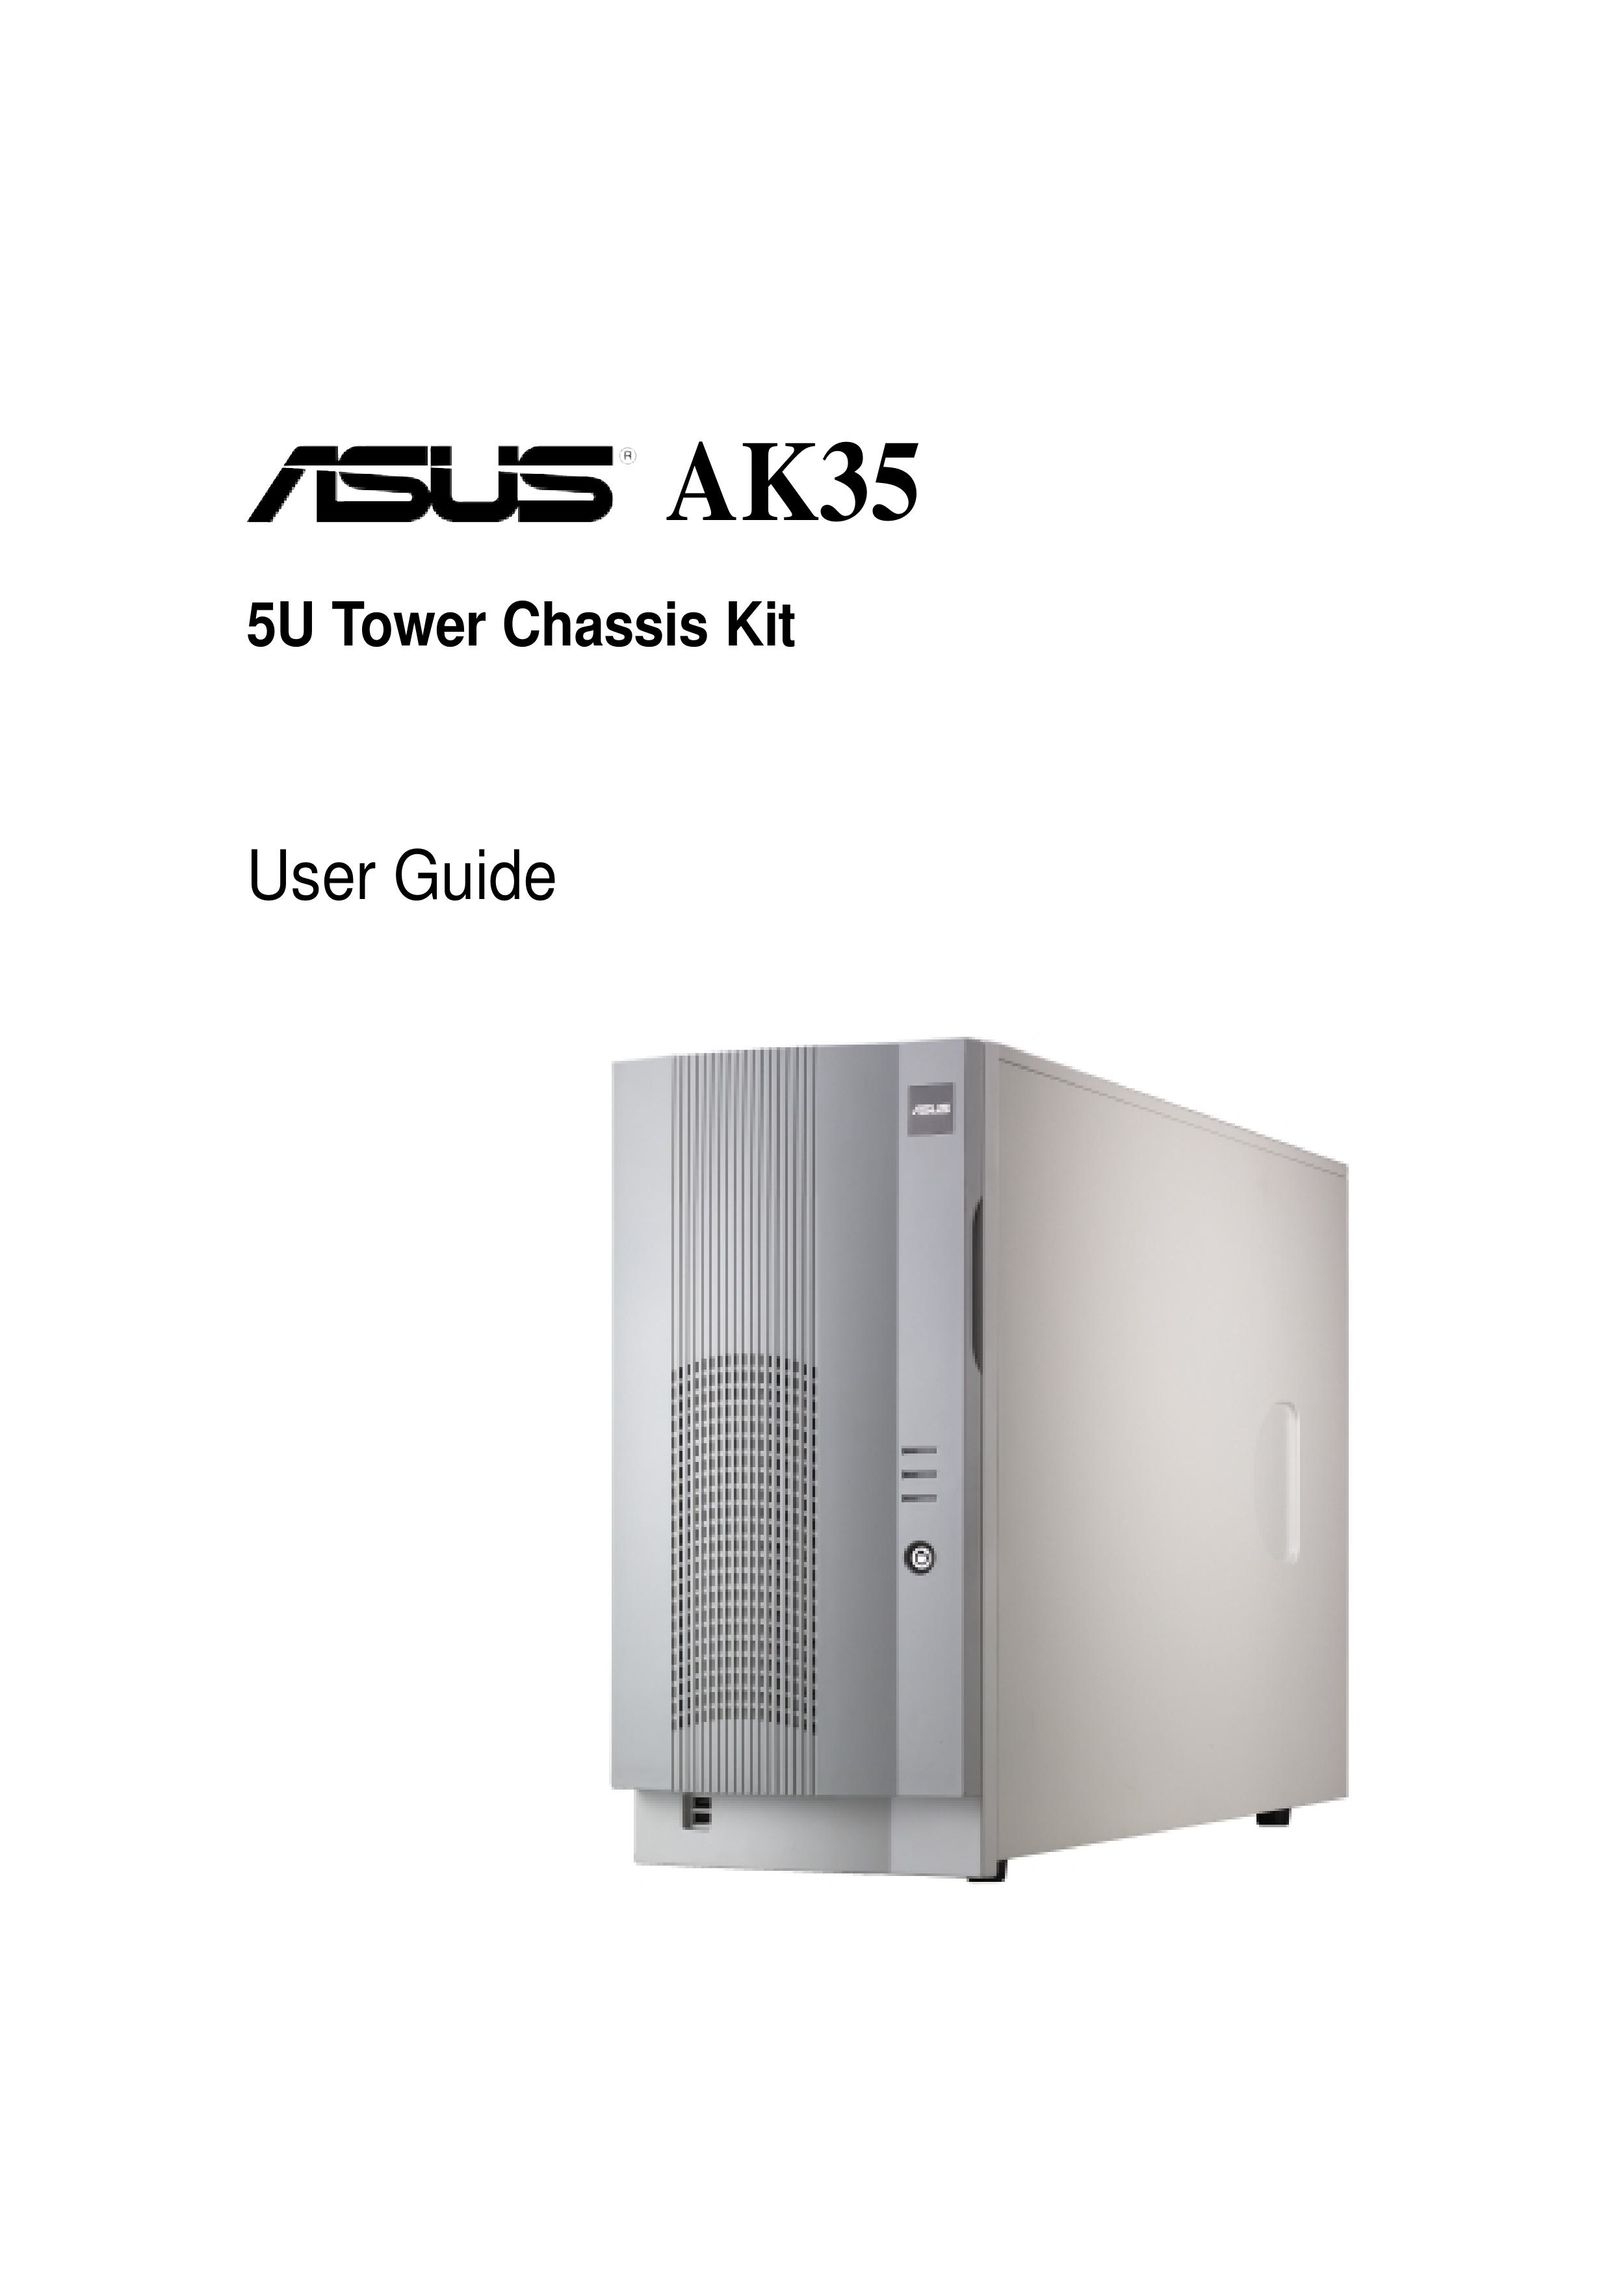 Asus AK35 Network Card User Manual